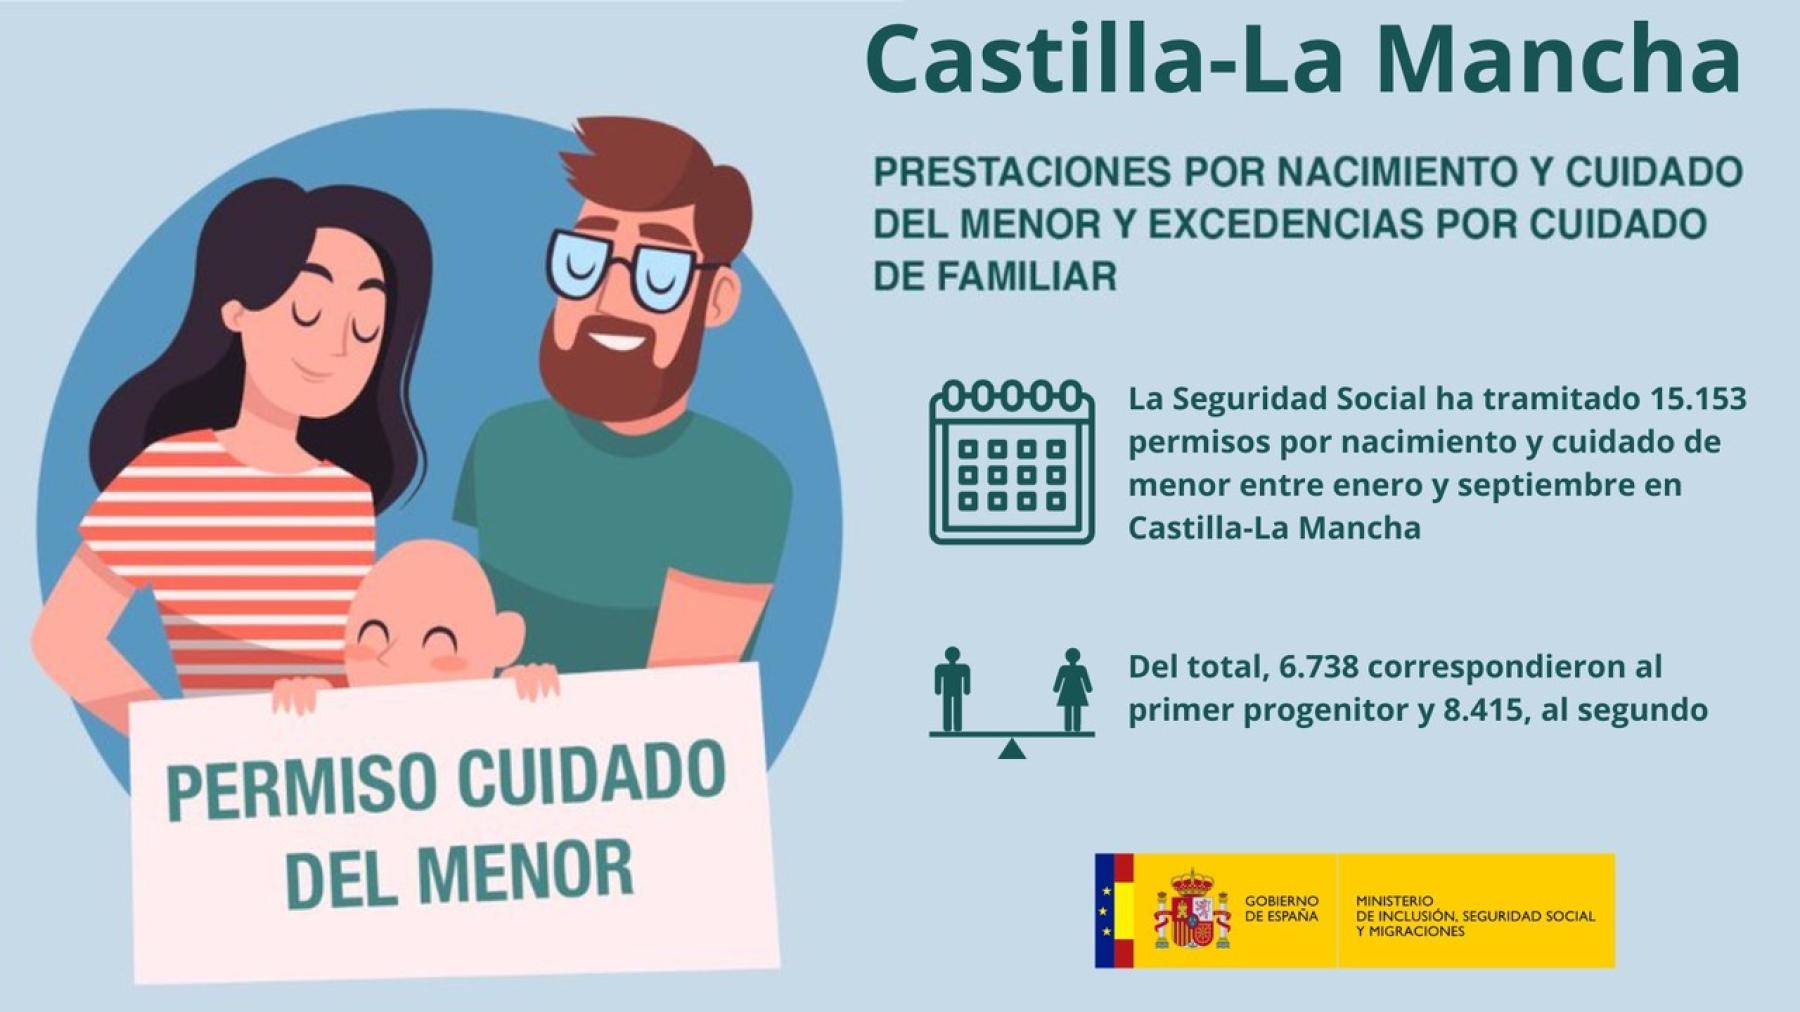 La Seguridad Social ha tramitado 15.153 permisos por nacimiento y cuidado de menor entre enero y septiembre en Castilla-La Mancha